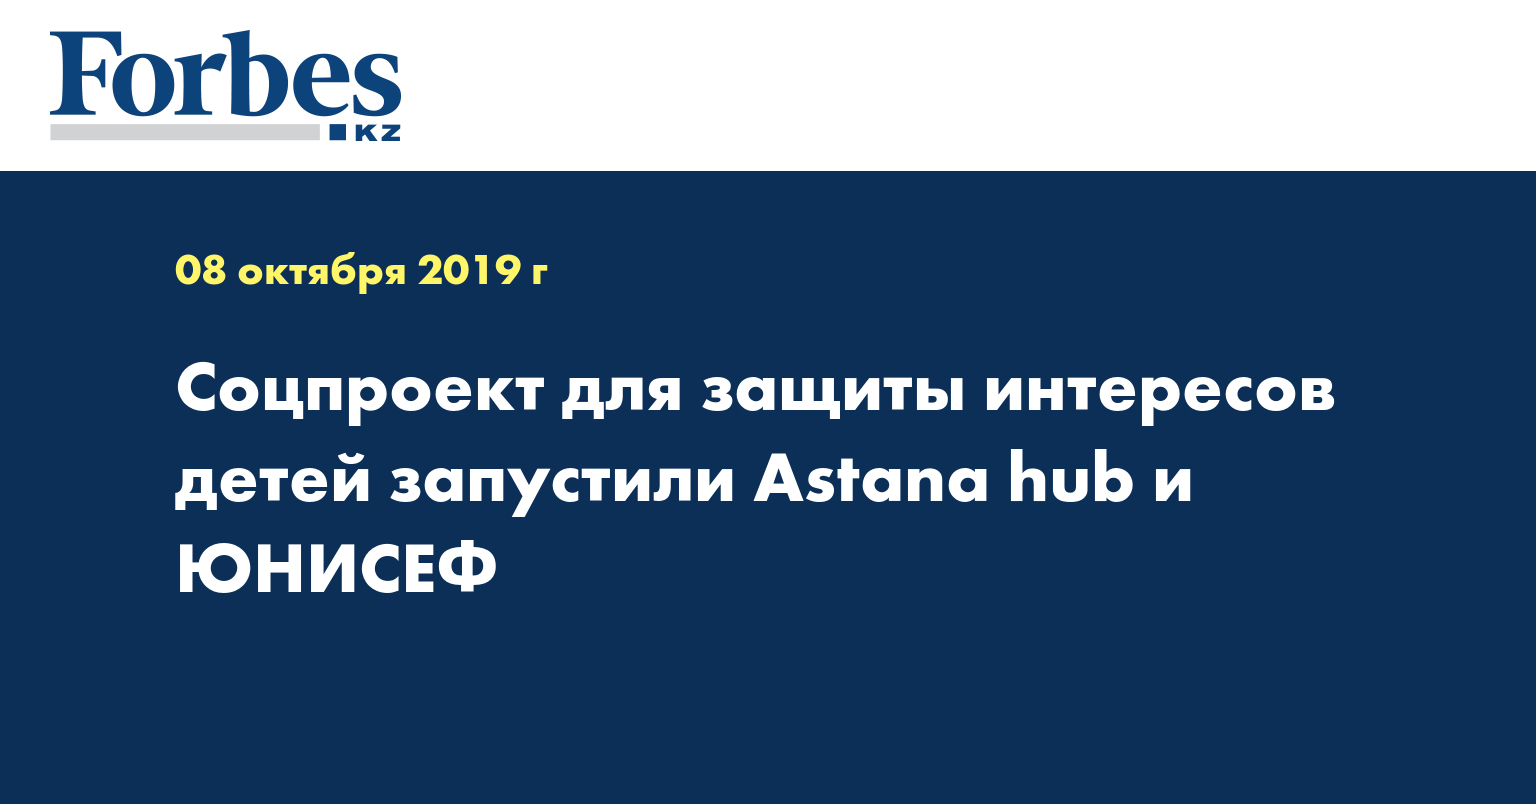 Соцпроект для защиты интересов детей запустили Astana hub и ЮНИСЕФ